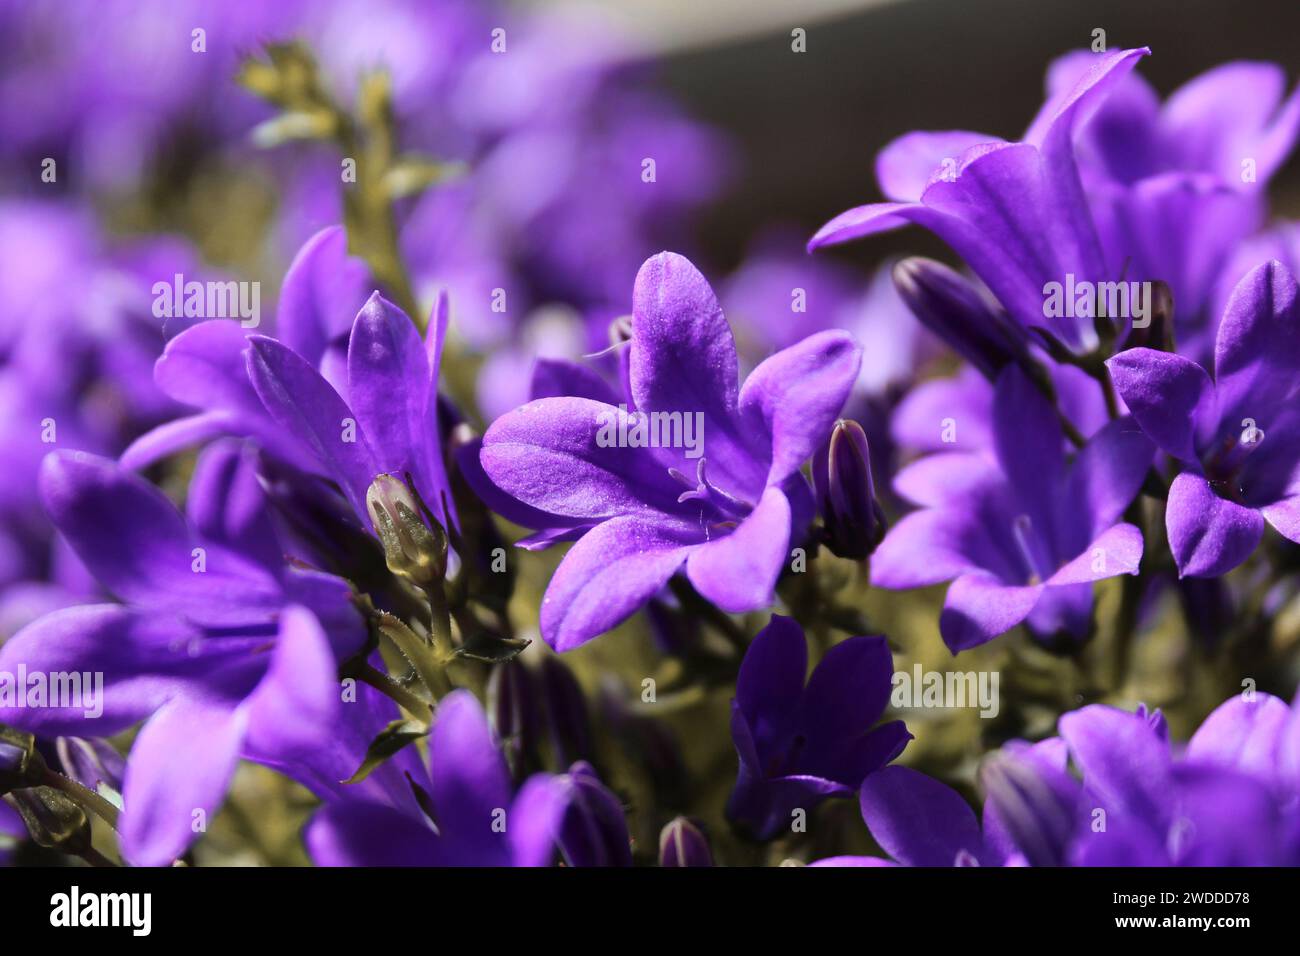 Campanula dalla Serbia 'Stella' (Campanula poscharskyana), una bellissima pianta perenne con fiori viola a forma di stella. Stock Photo